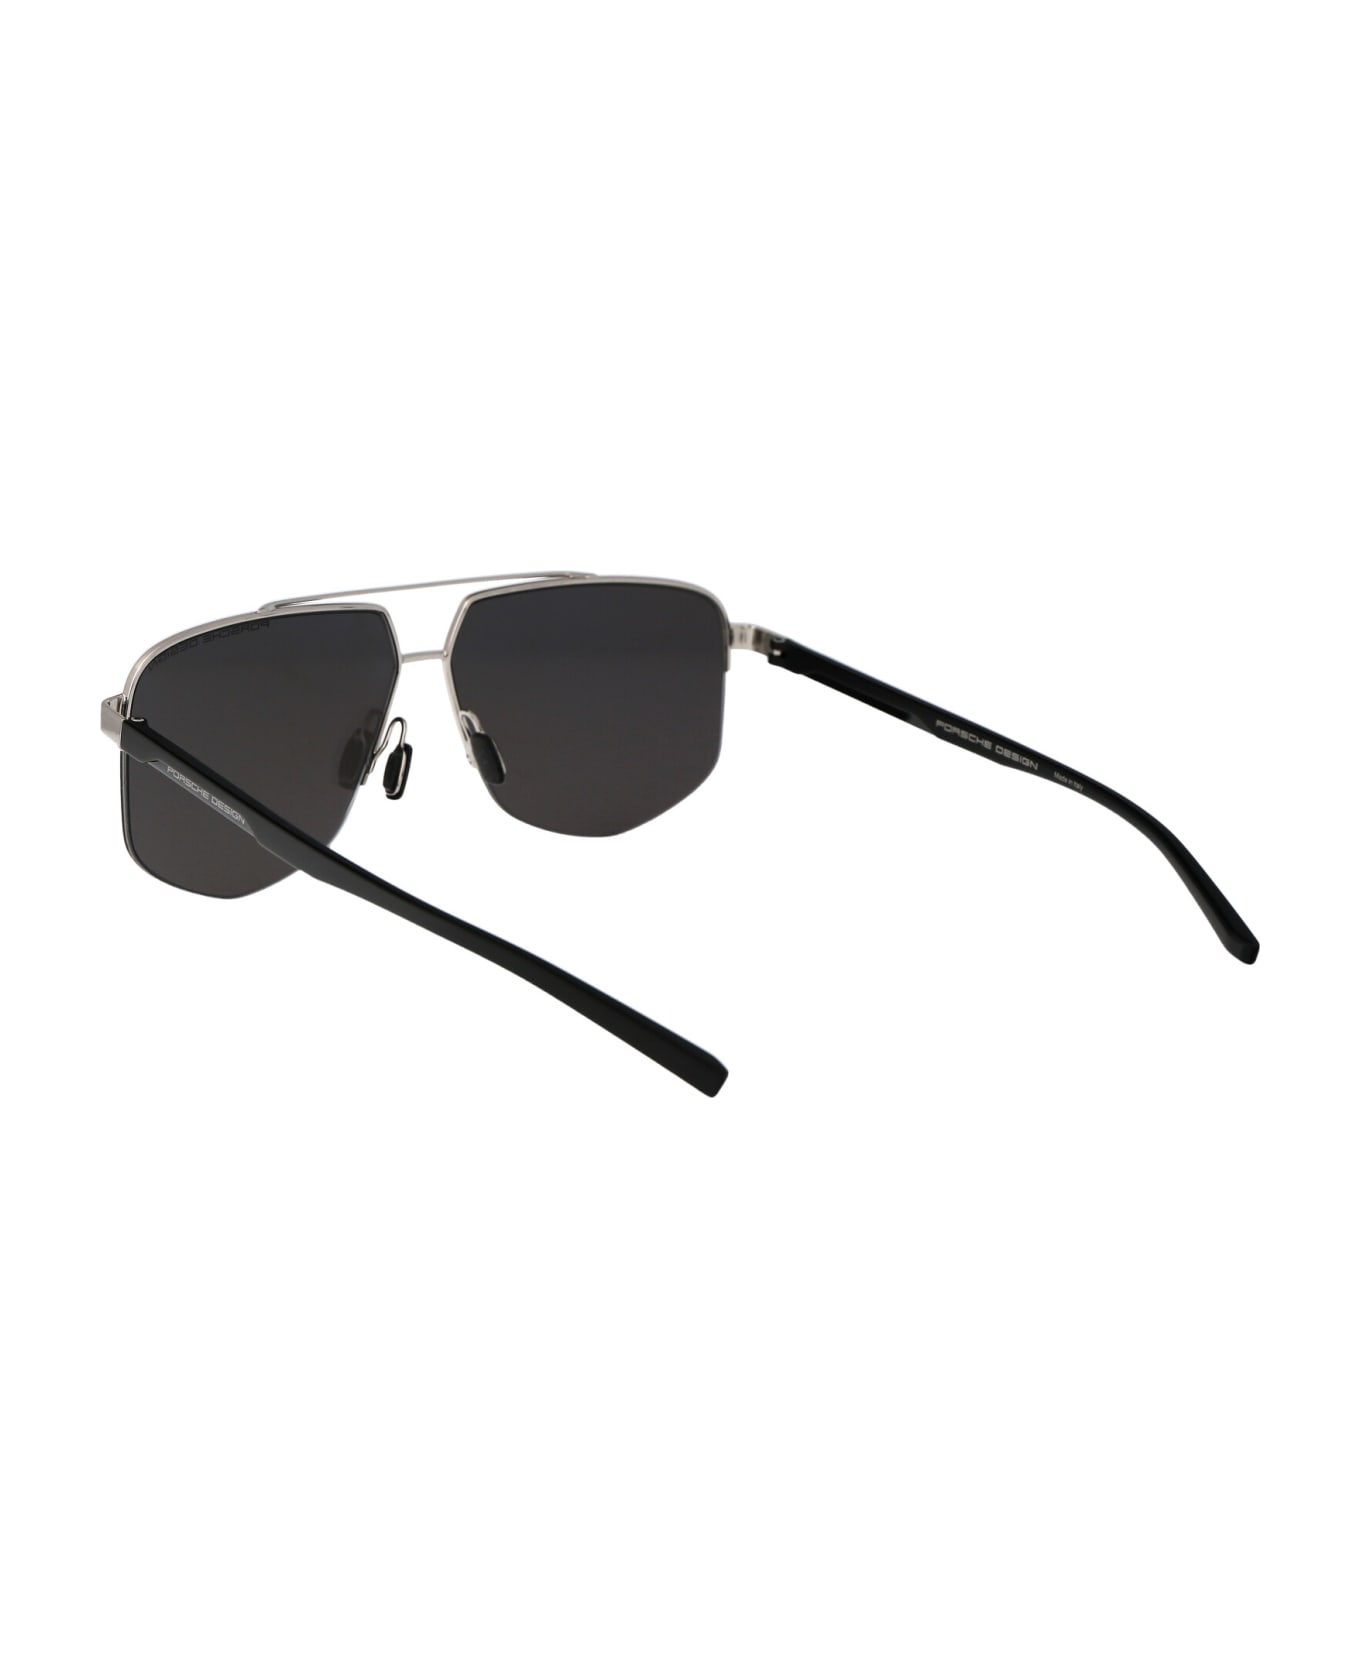 Porsche Design P8943 Sunglasses - B195 PALLADIUM BLACK